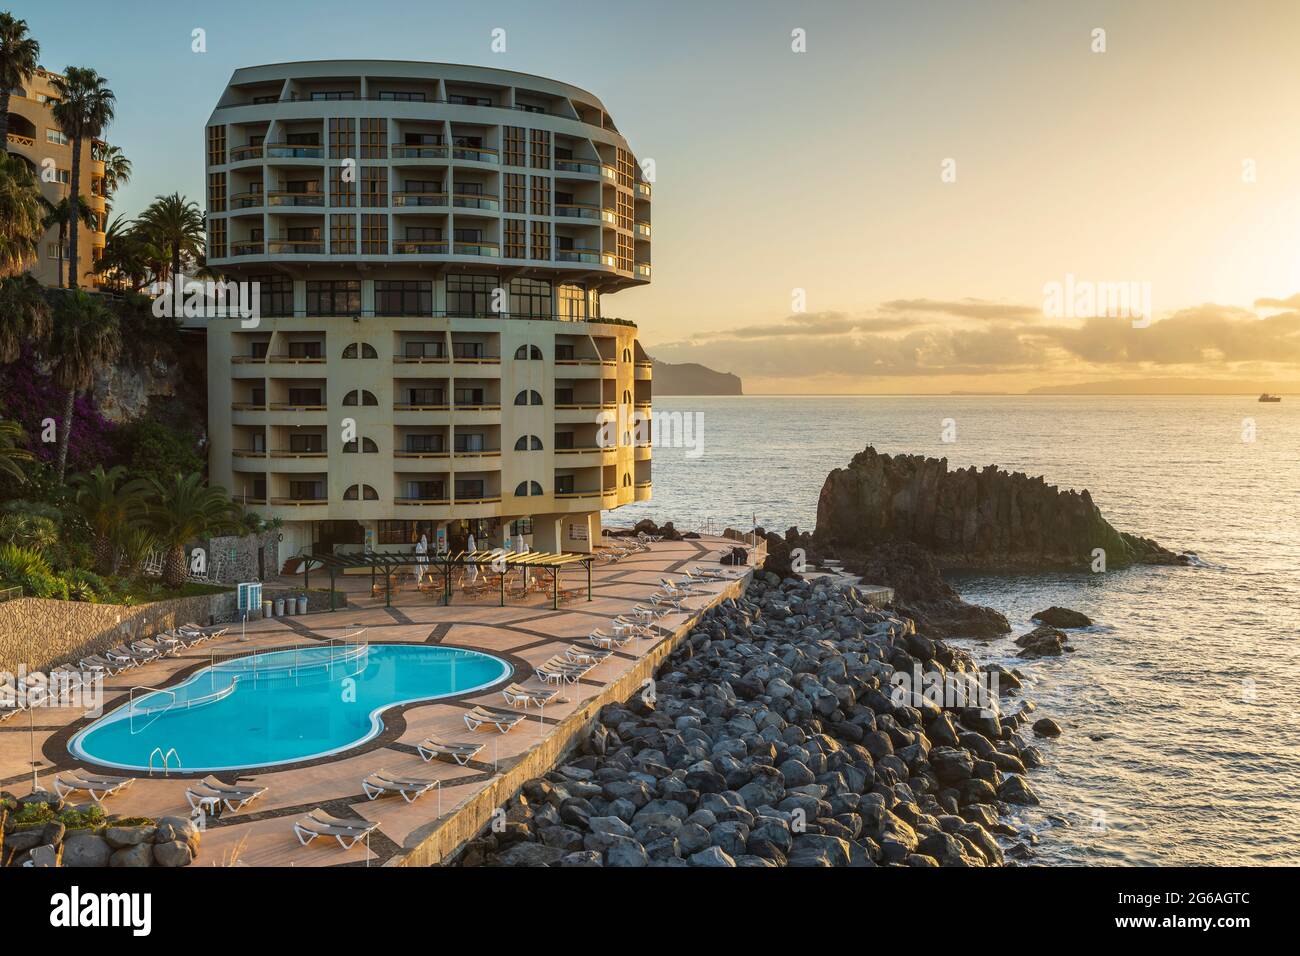 Una imagen de uno de los muchos hoteles situados en la costa cerca de Funchal Madeira fotografiada durante un hermoso amanecer en el período de Navidad de diciembre Foto de stock